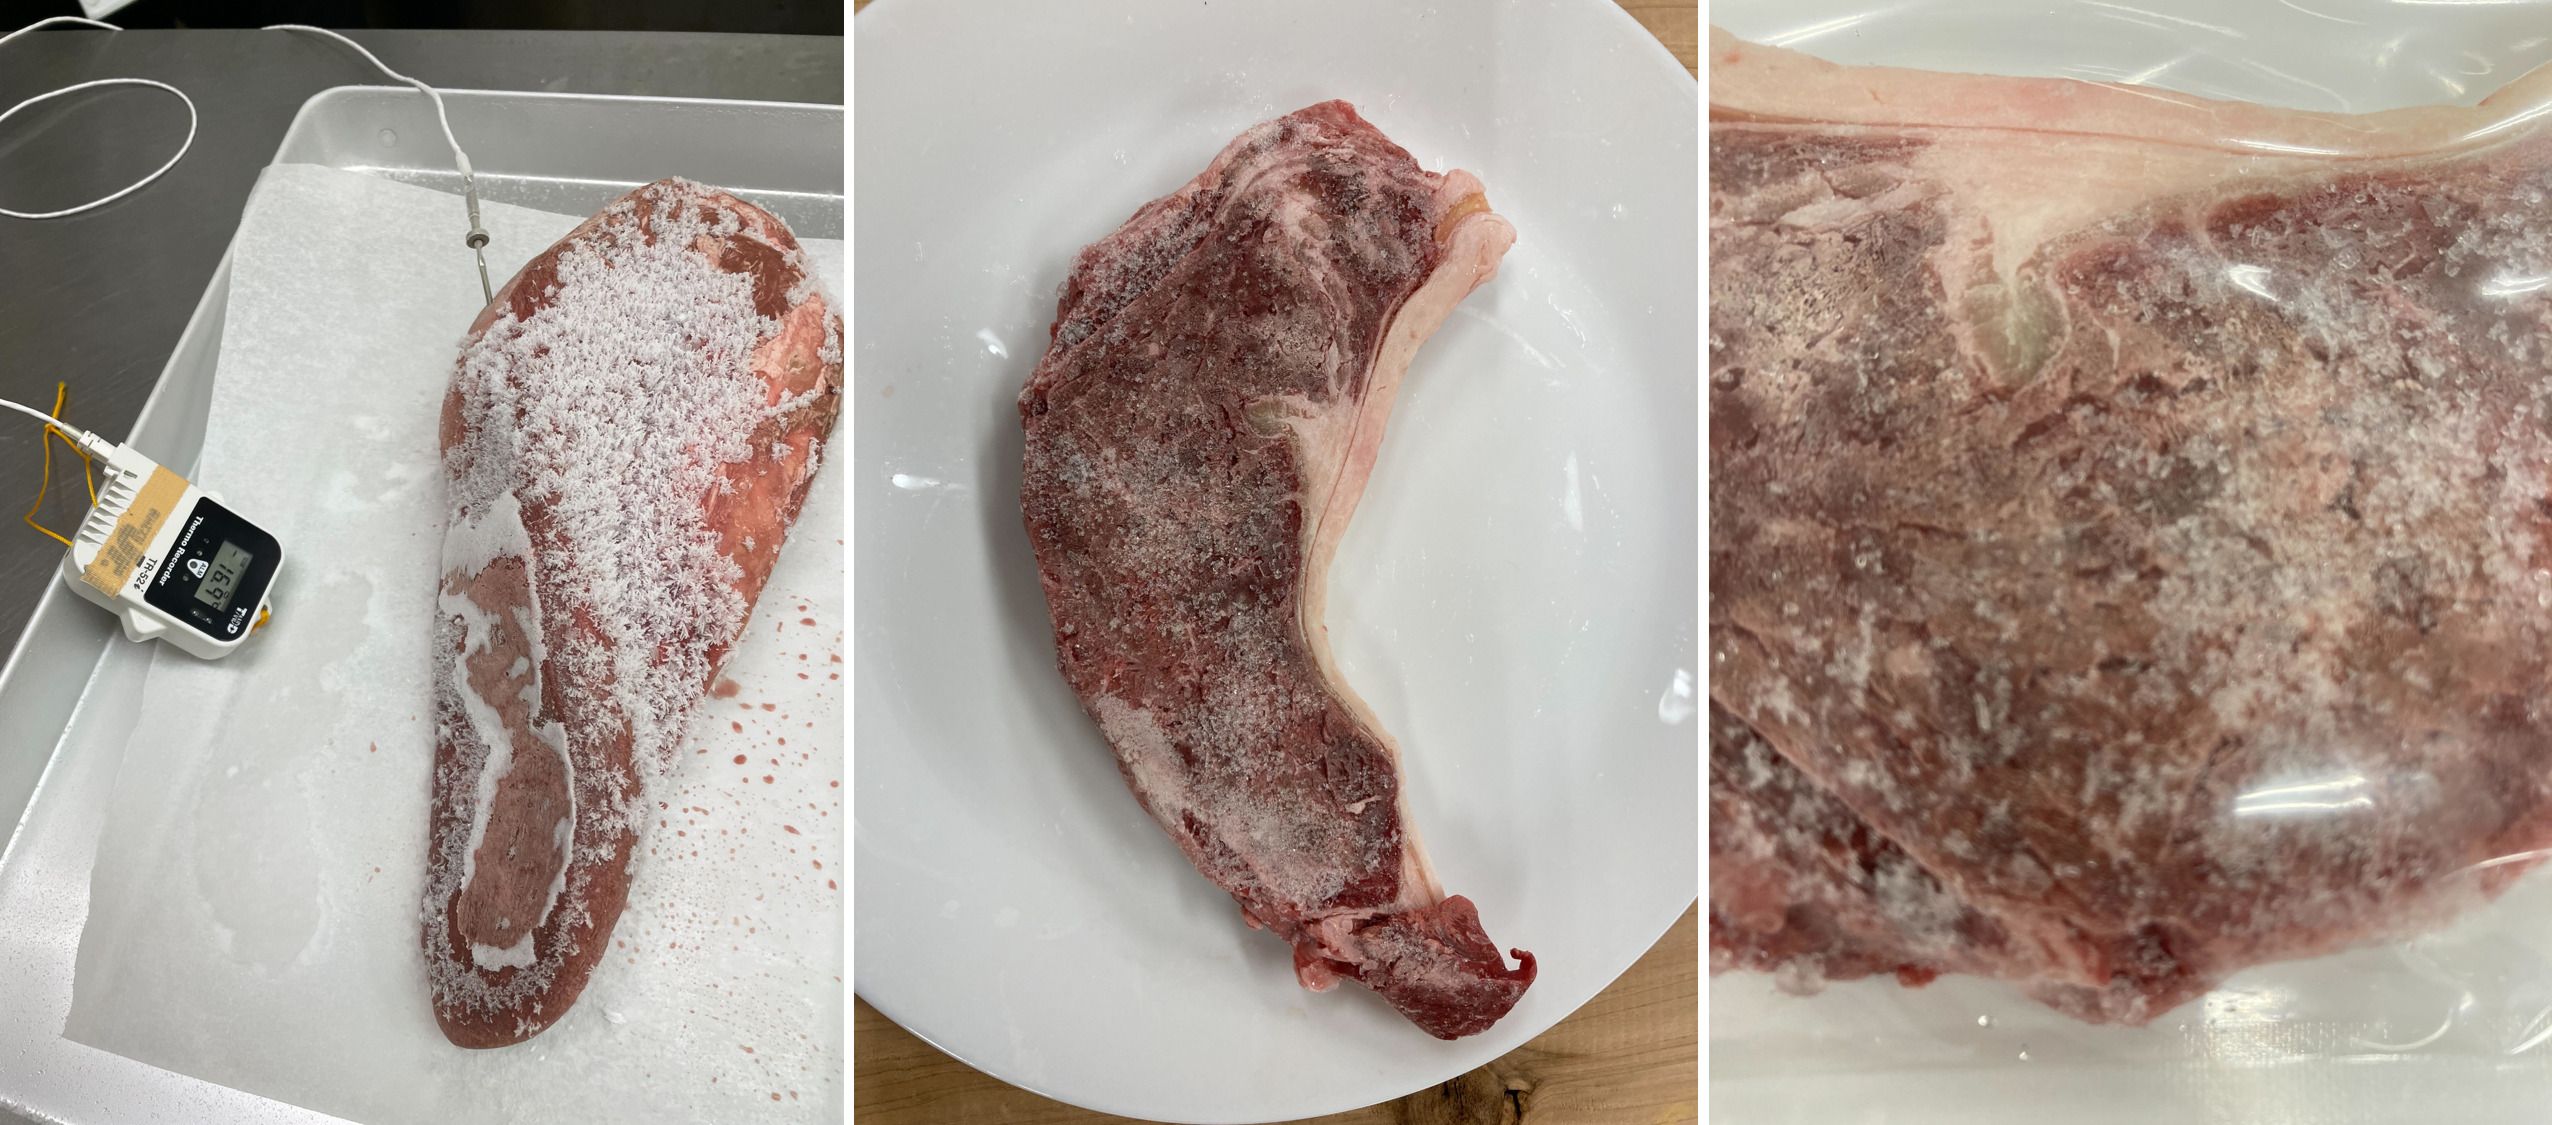 左:アートロックフリーザーから取り出した直後の牛肉、中央・右:冷凍焼け状態の牛肉